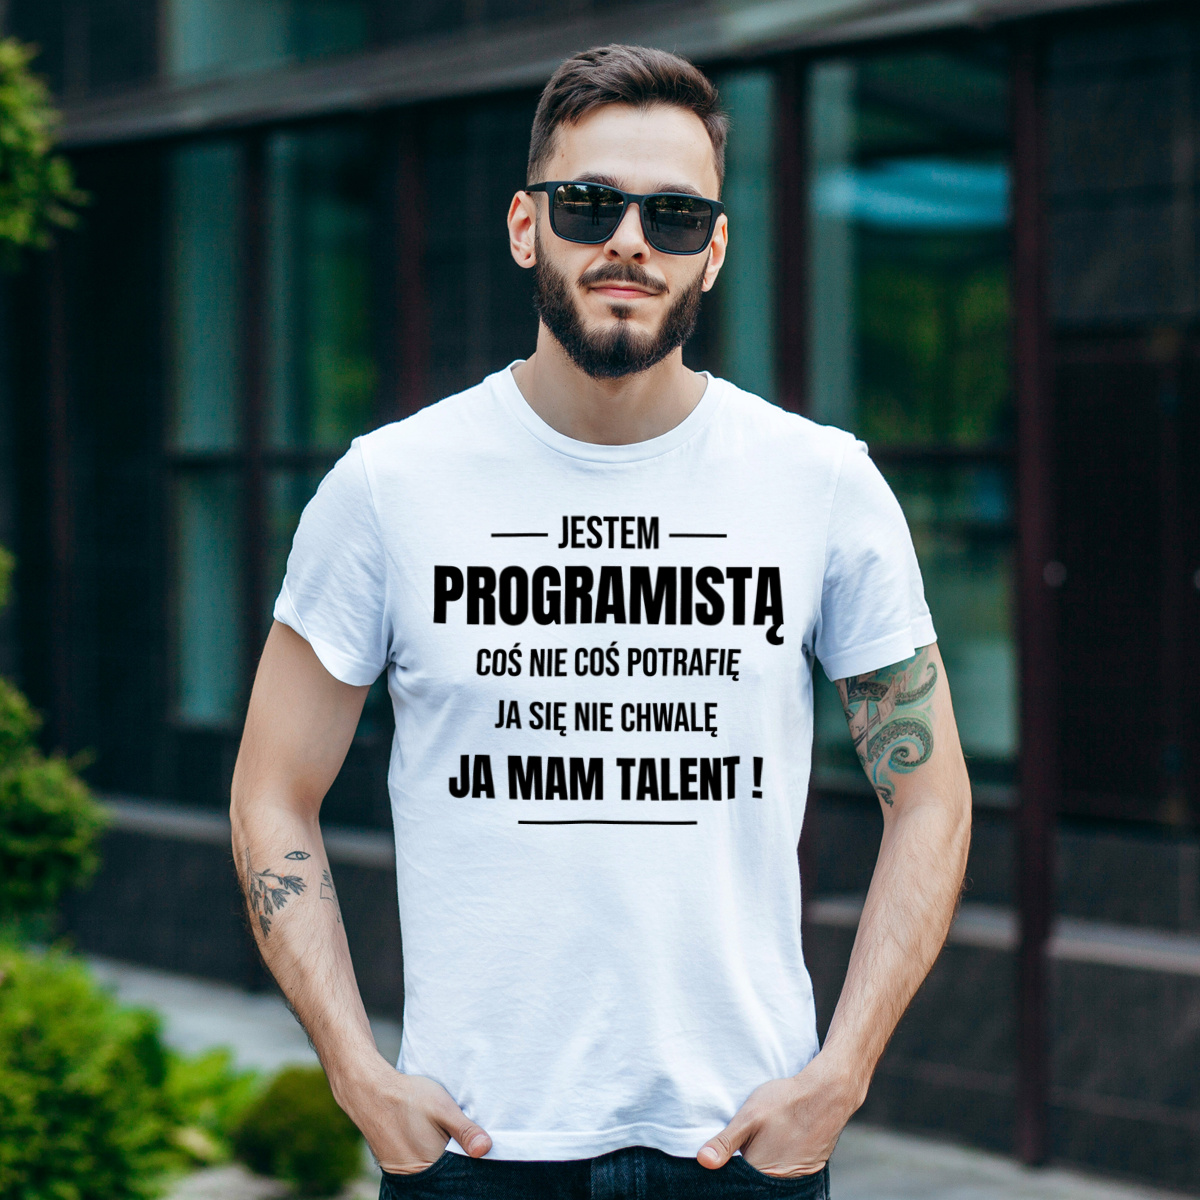 Coś Nie Coś Potrafię Mam Talent Programista - Męska Koszulka Biała